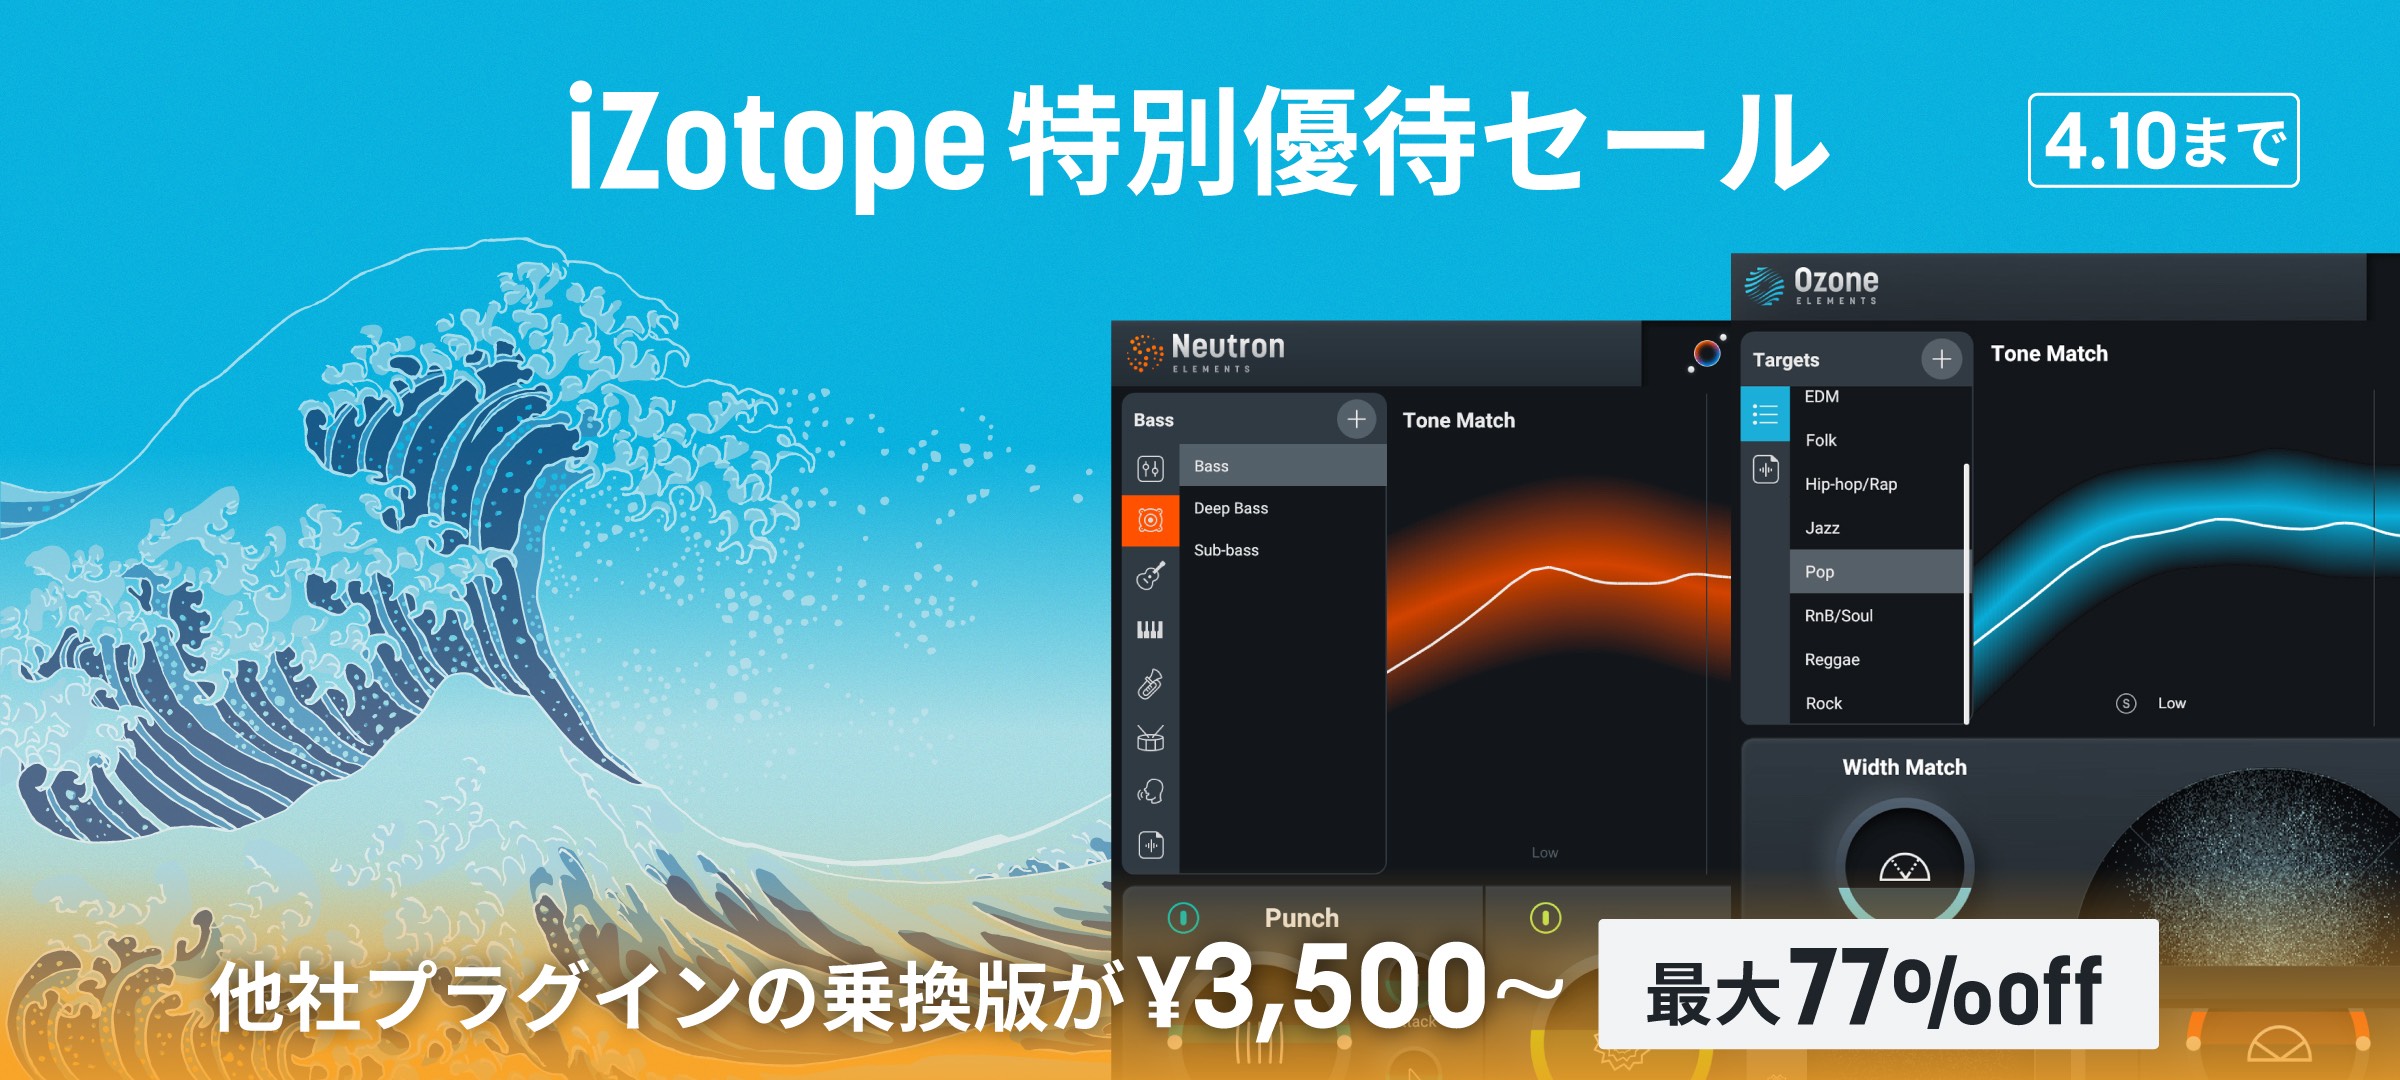 iZotope特別優待セール - iZotope Japan